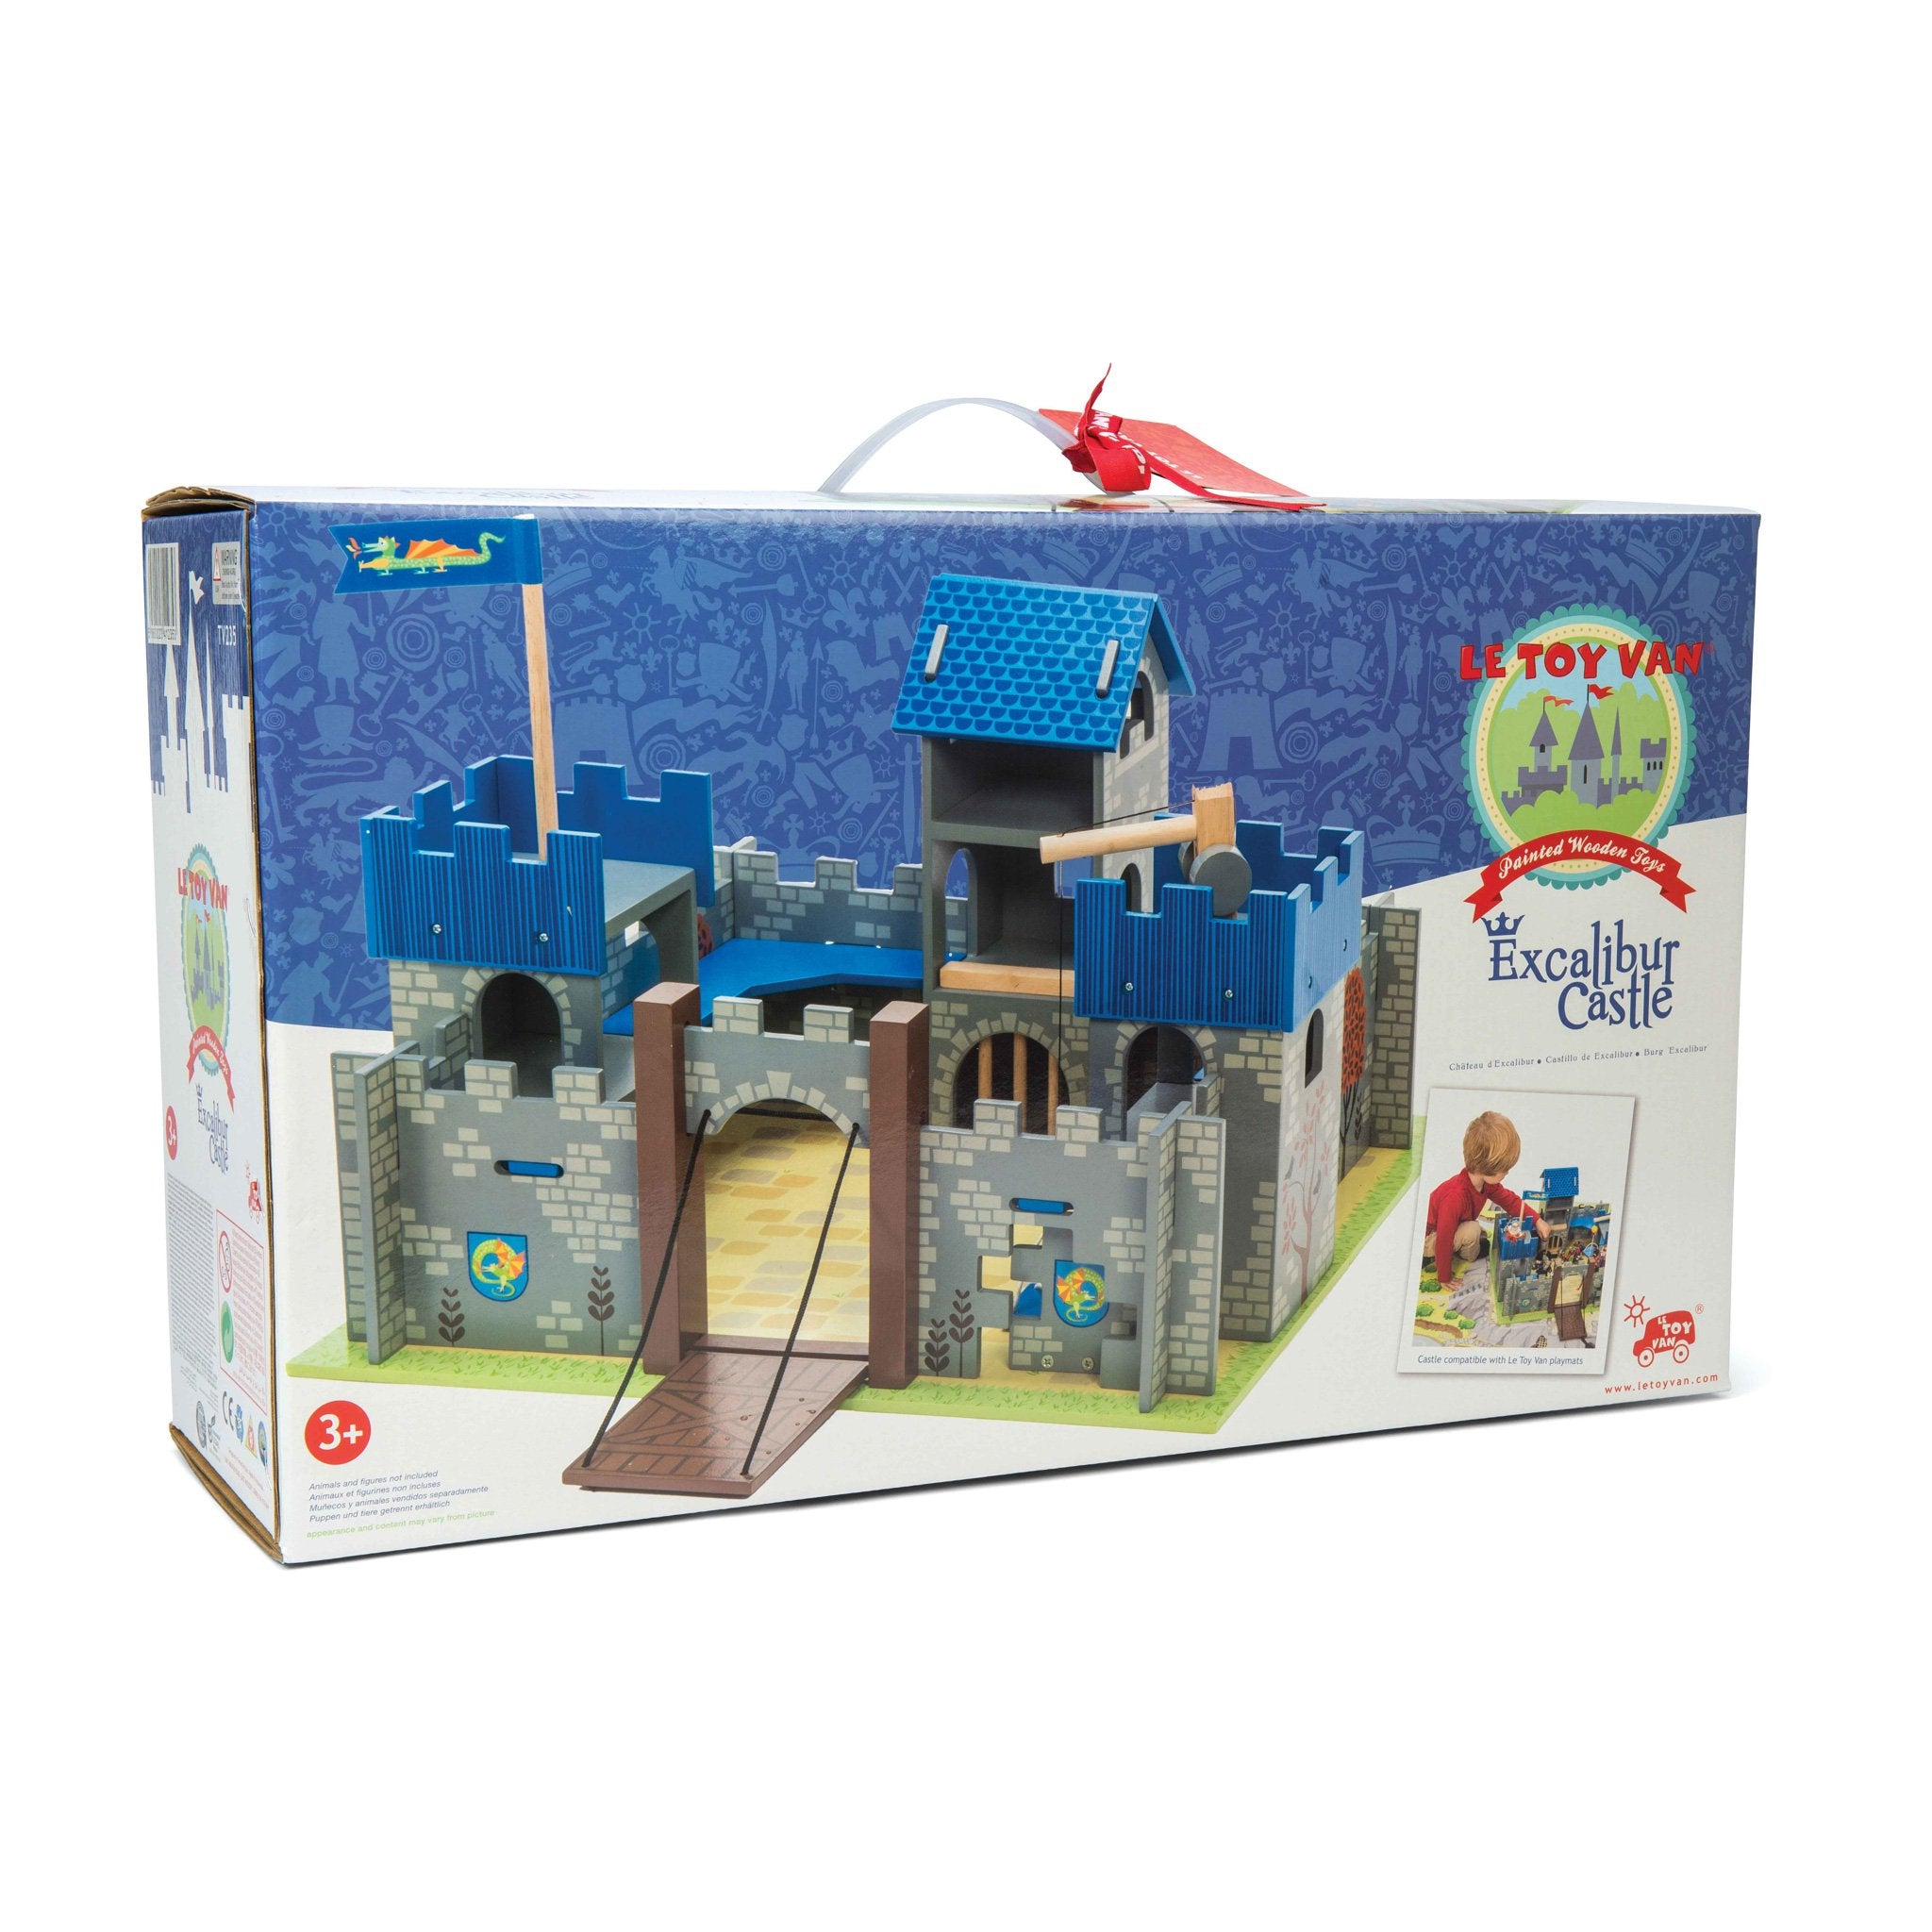 Le Toy Van Excalibur Wooden Toy Castle For Children